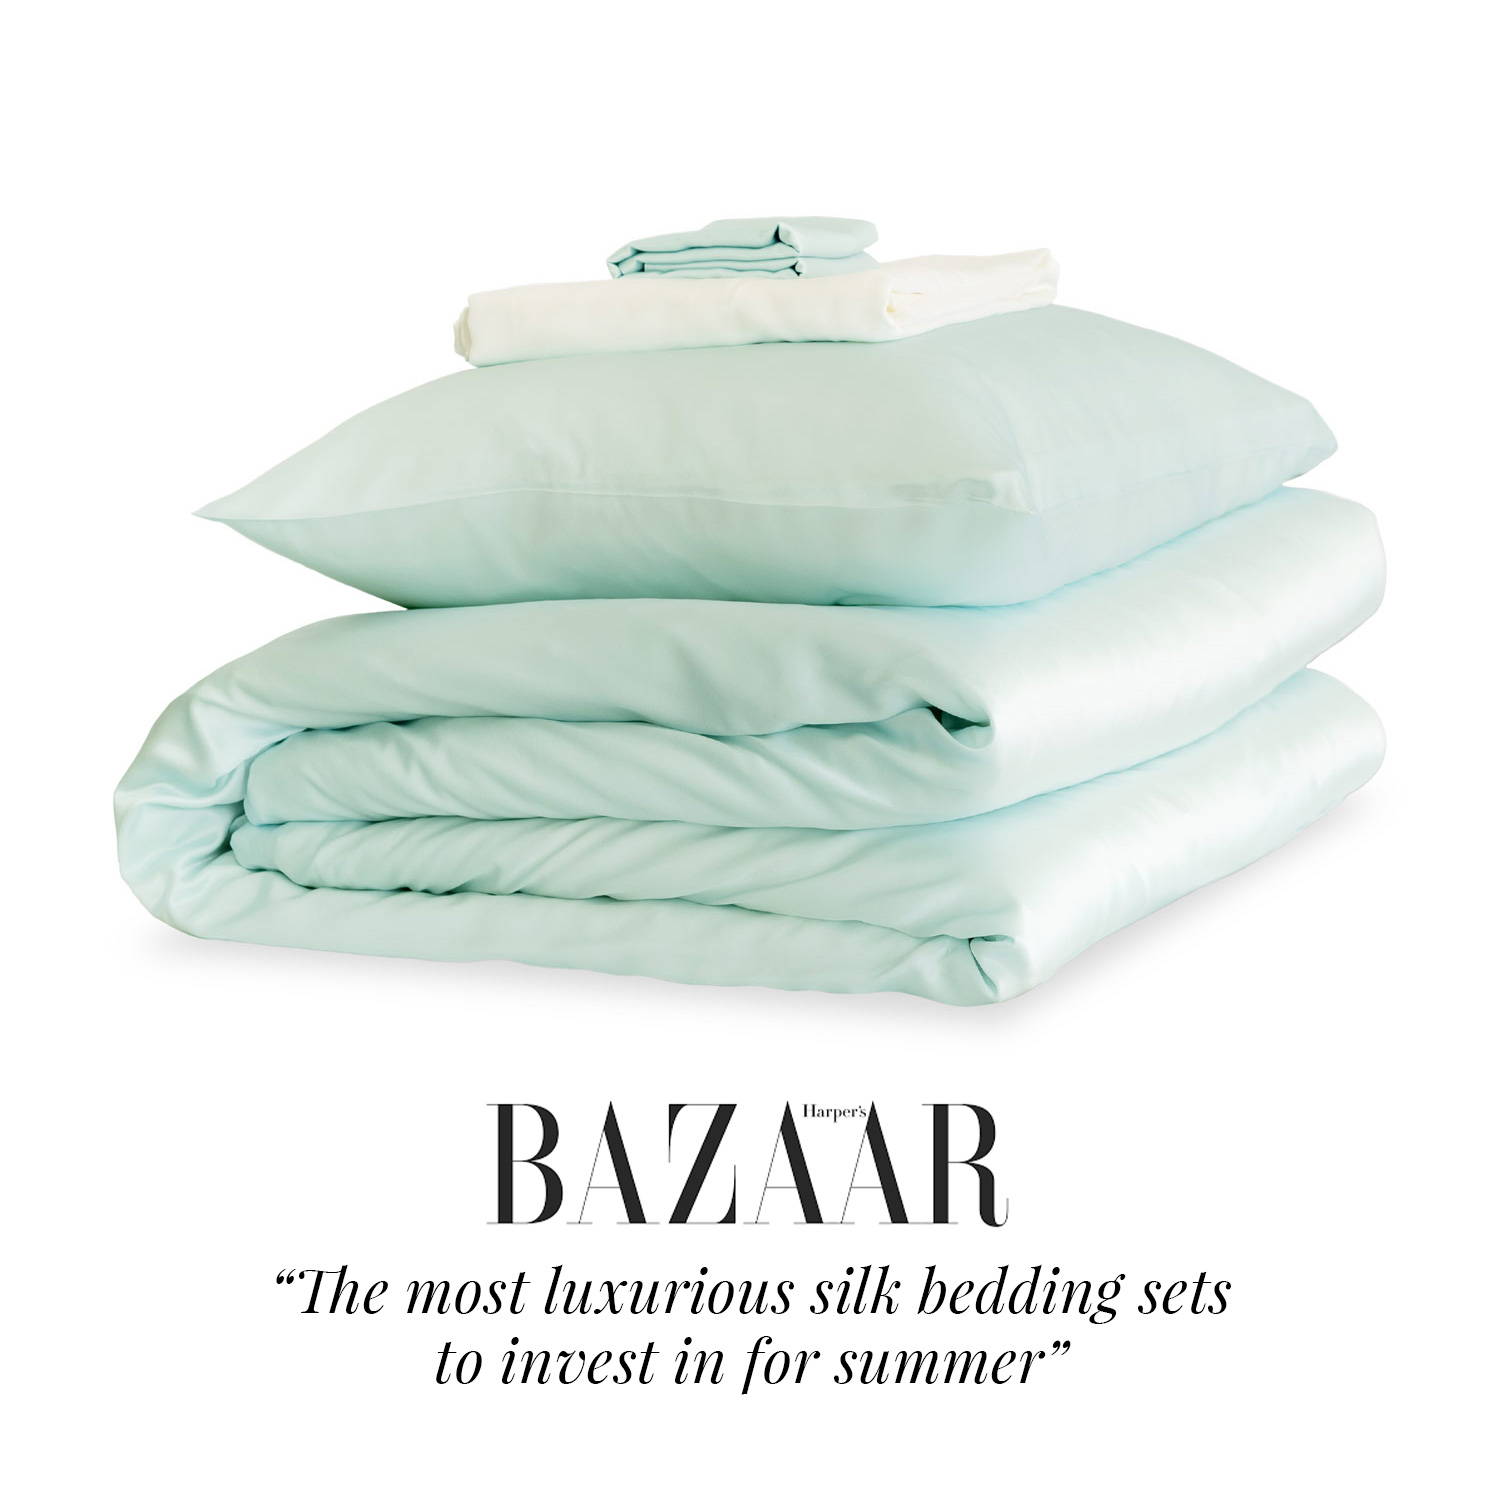 Juego de sábanas de seda de color verde azulado de Mayfairsilk con una cita de Harper's Bazaar: los juegos de cama de seda más lujosos en los que invertir para el verano